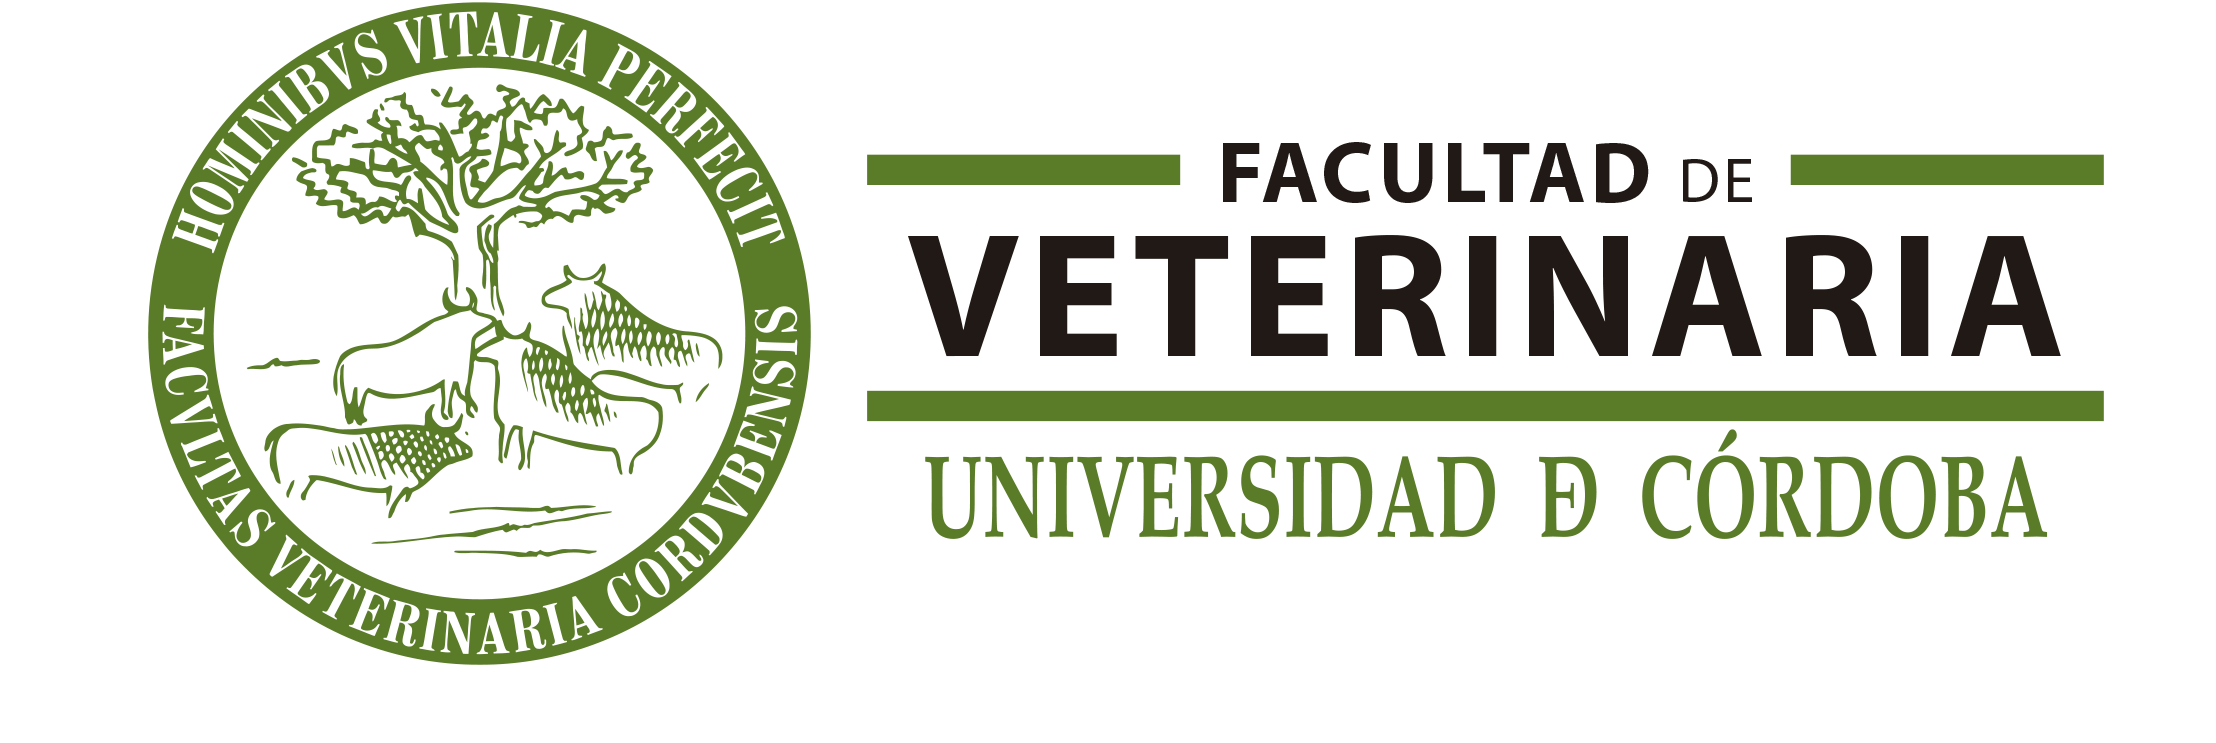 Variaciones Logo UCO Veterinaria II 1